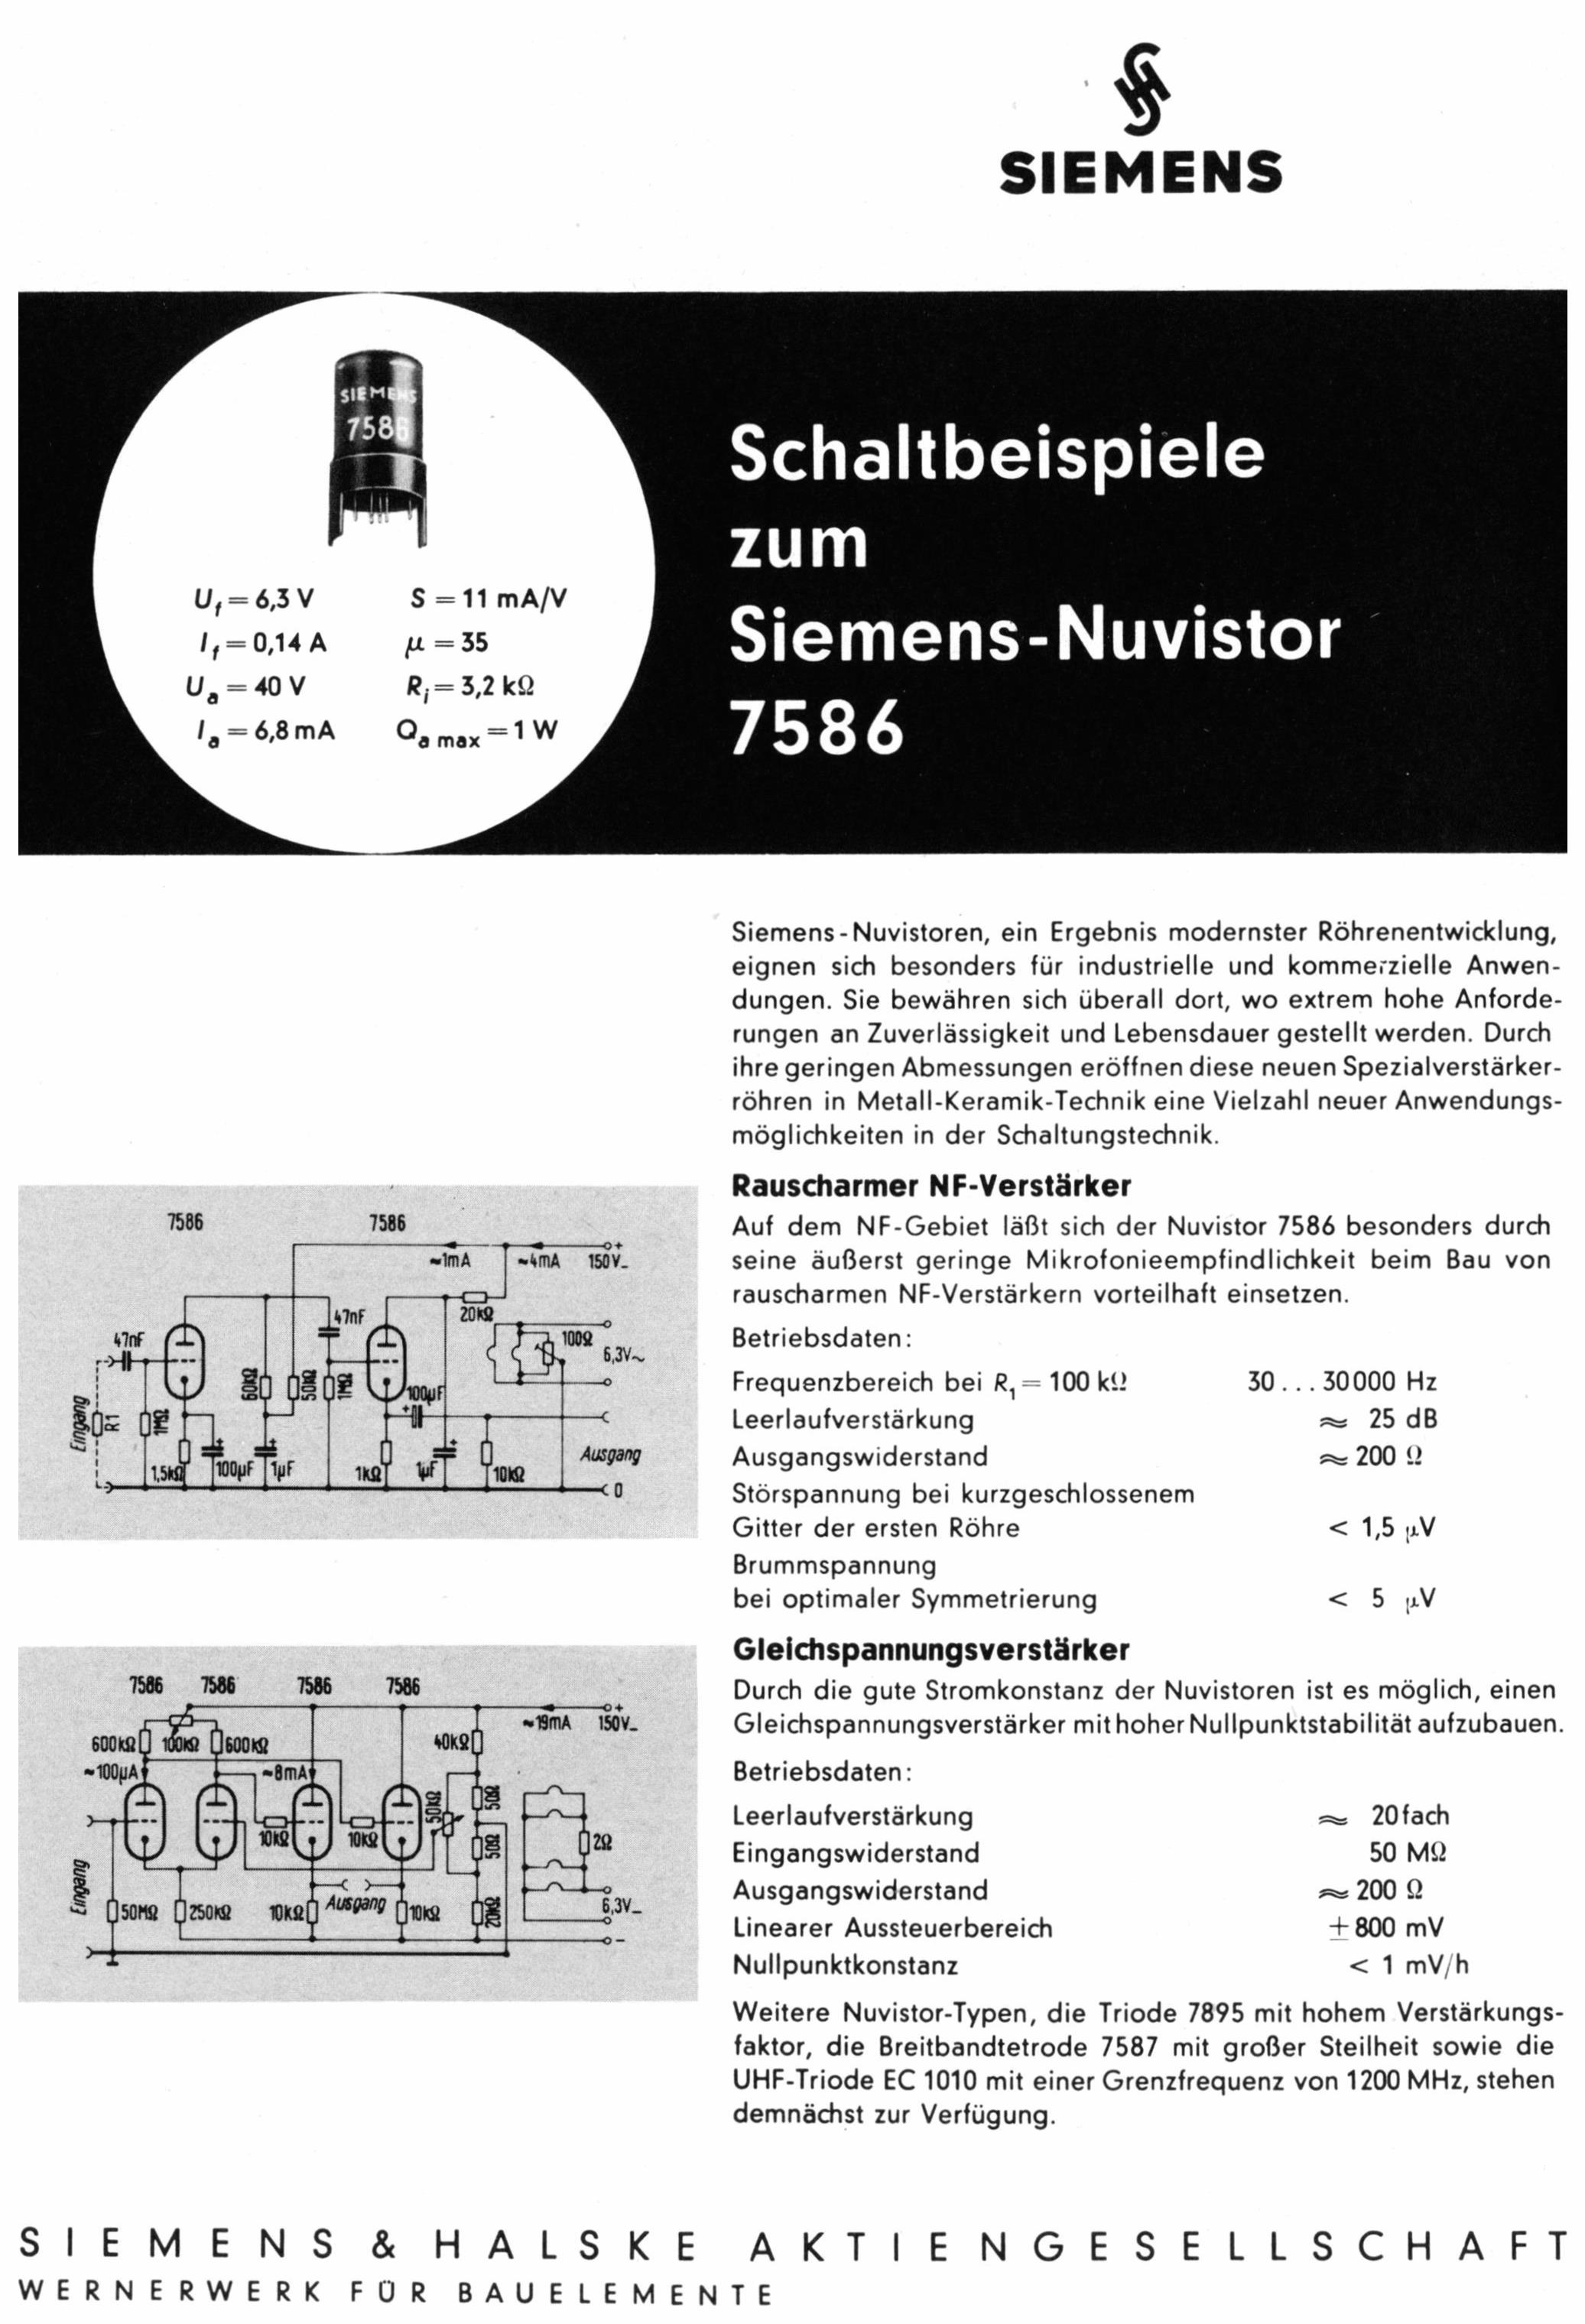 Siemens 1962 3.jpg